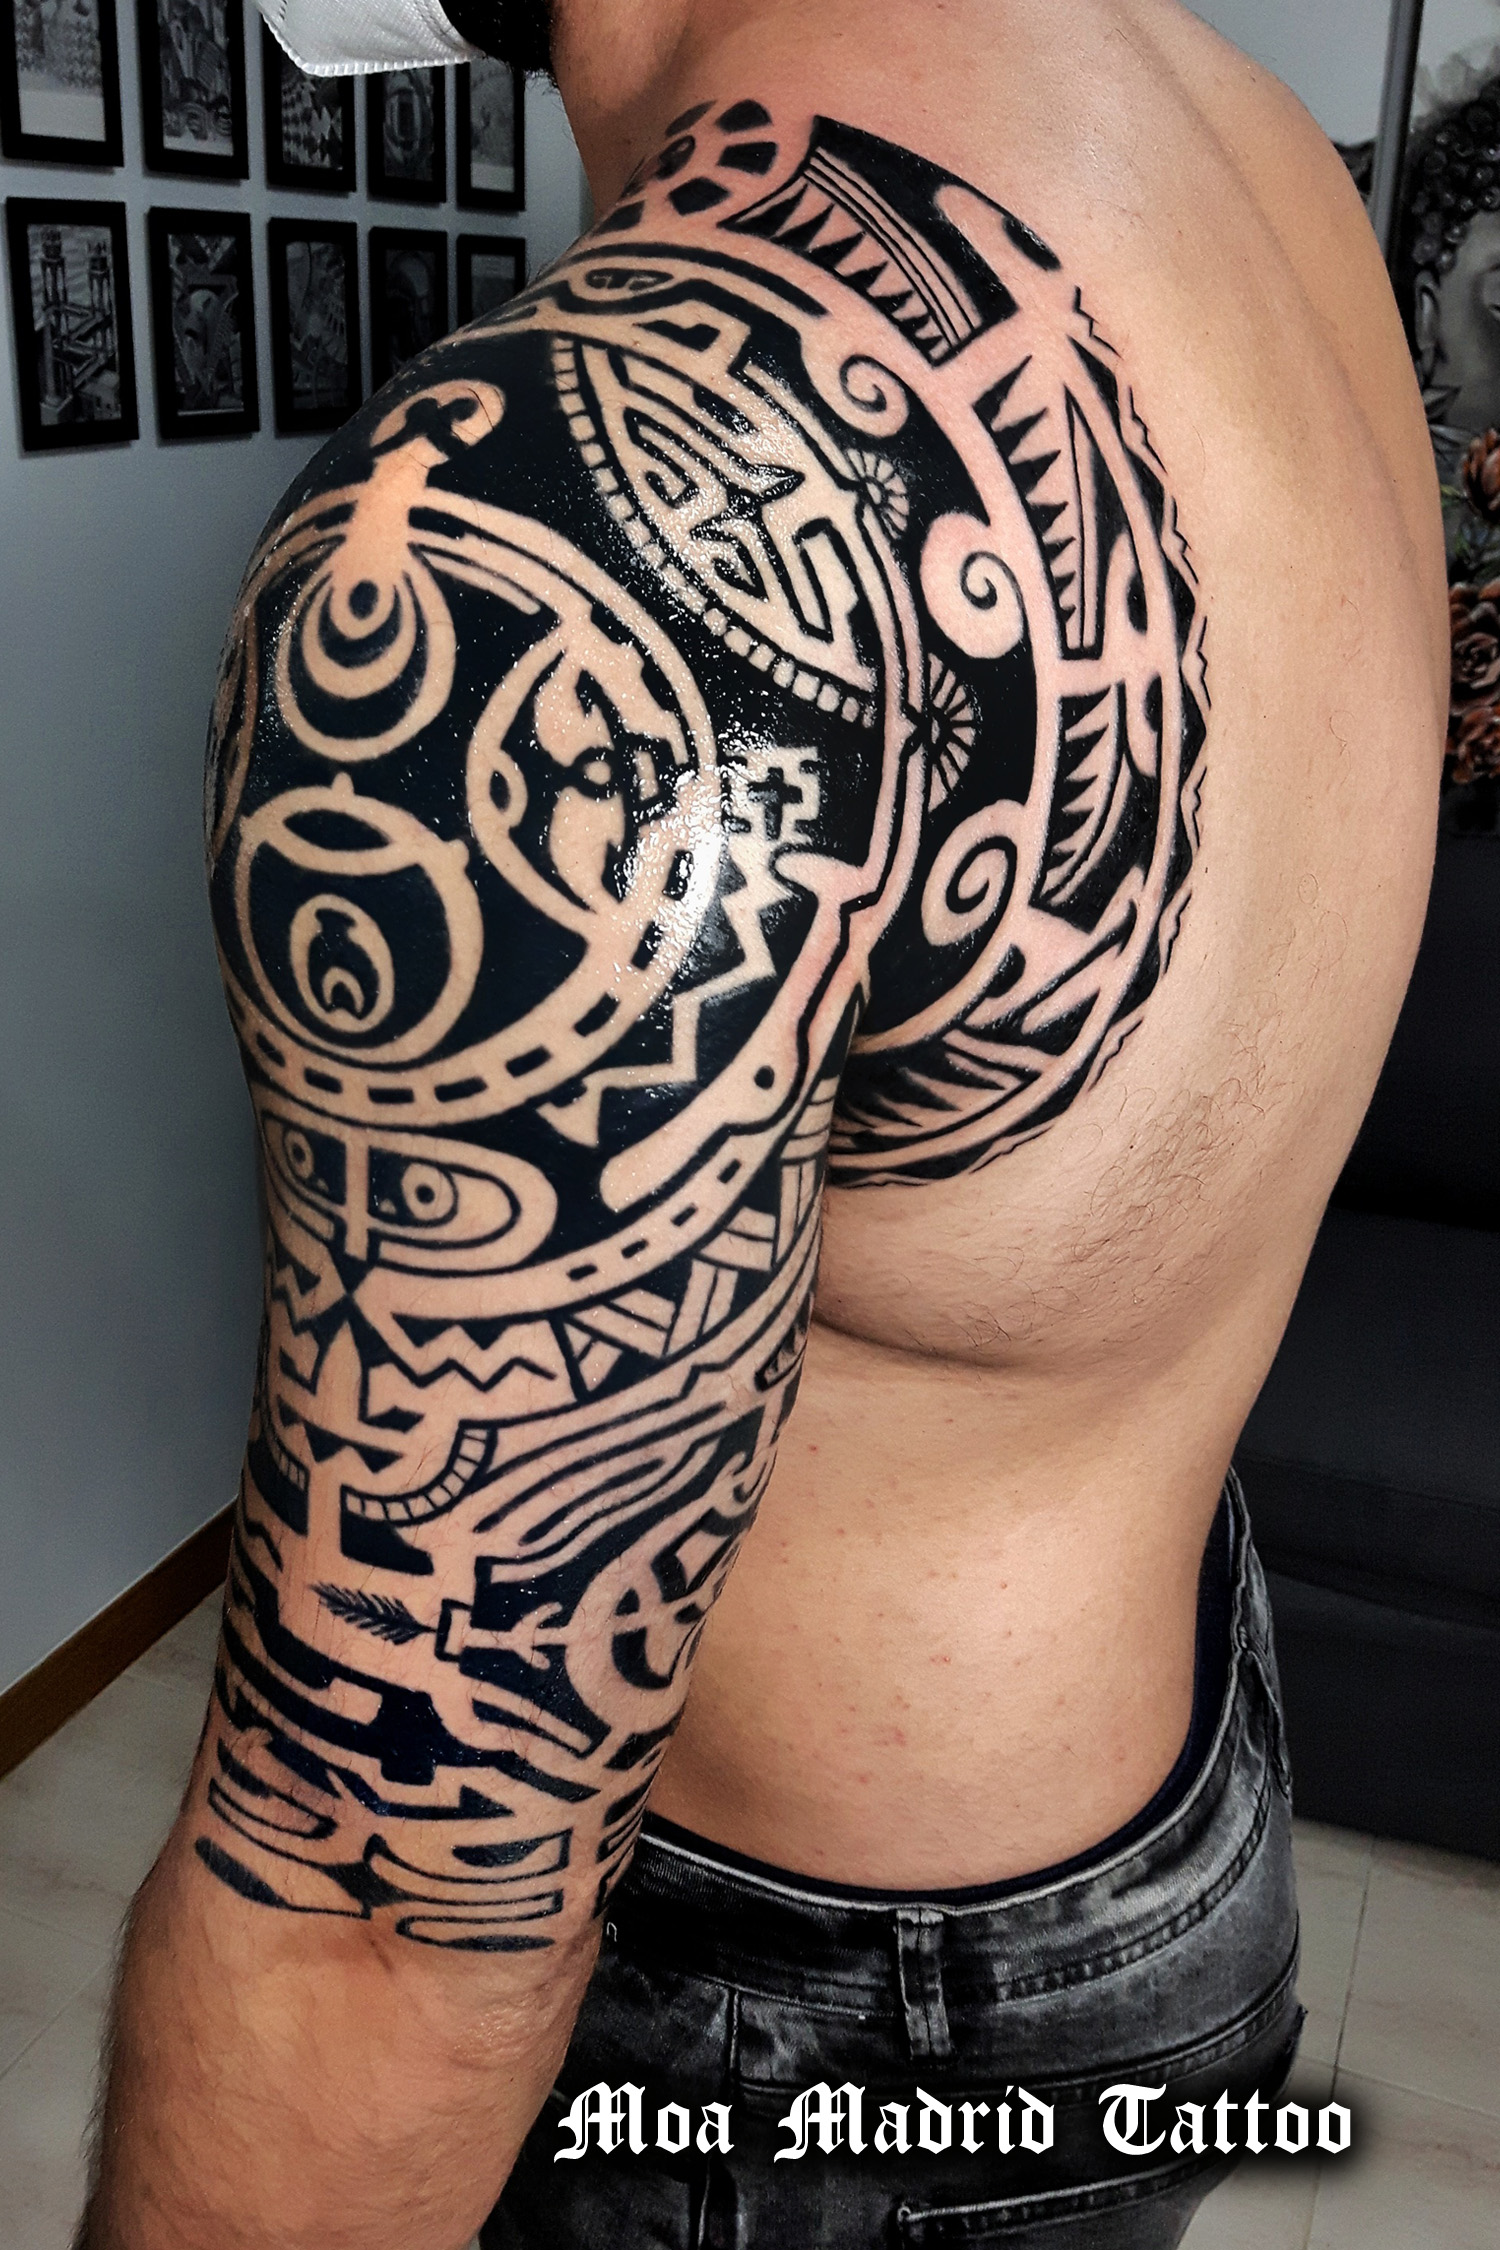 Tatuaje maorí inspirado en el de Dwayne Johnson: parte trasera del brazo y omóplato